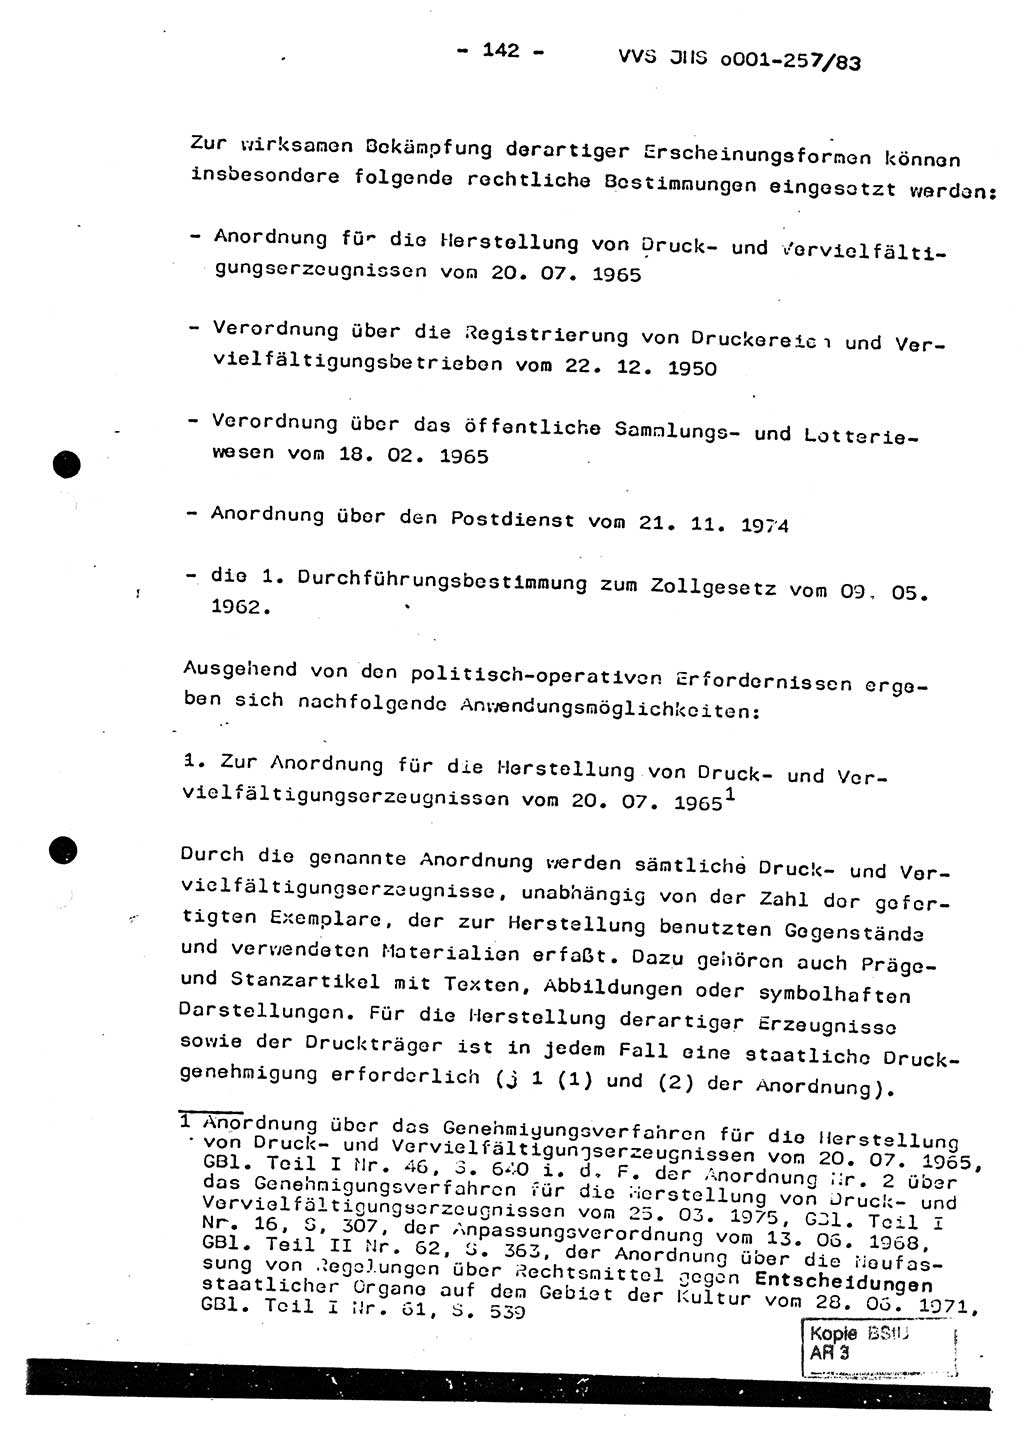 Dissertation, Oberst Helmut Lubas (BV Mdg.), Oberstleutnant Manfred Eschberger (HA IX), Oberleutnant Hans-Jürgen Ludwig (JHS), Ministerium für Staatssicherheit (MfS) [Deutsche Demokratische Republik (DDR)], Juristische Hochschule (JHS), Vertrauliche Verschlußsache (VVS) o001-257/83, Potsdam 1983, Seite 142 (Diss. MfS DDR JHS VVS o001-257/83 1983, S. 142)